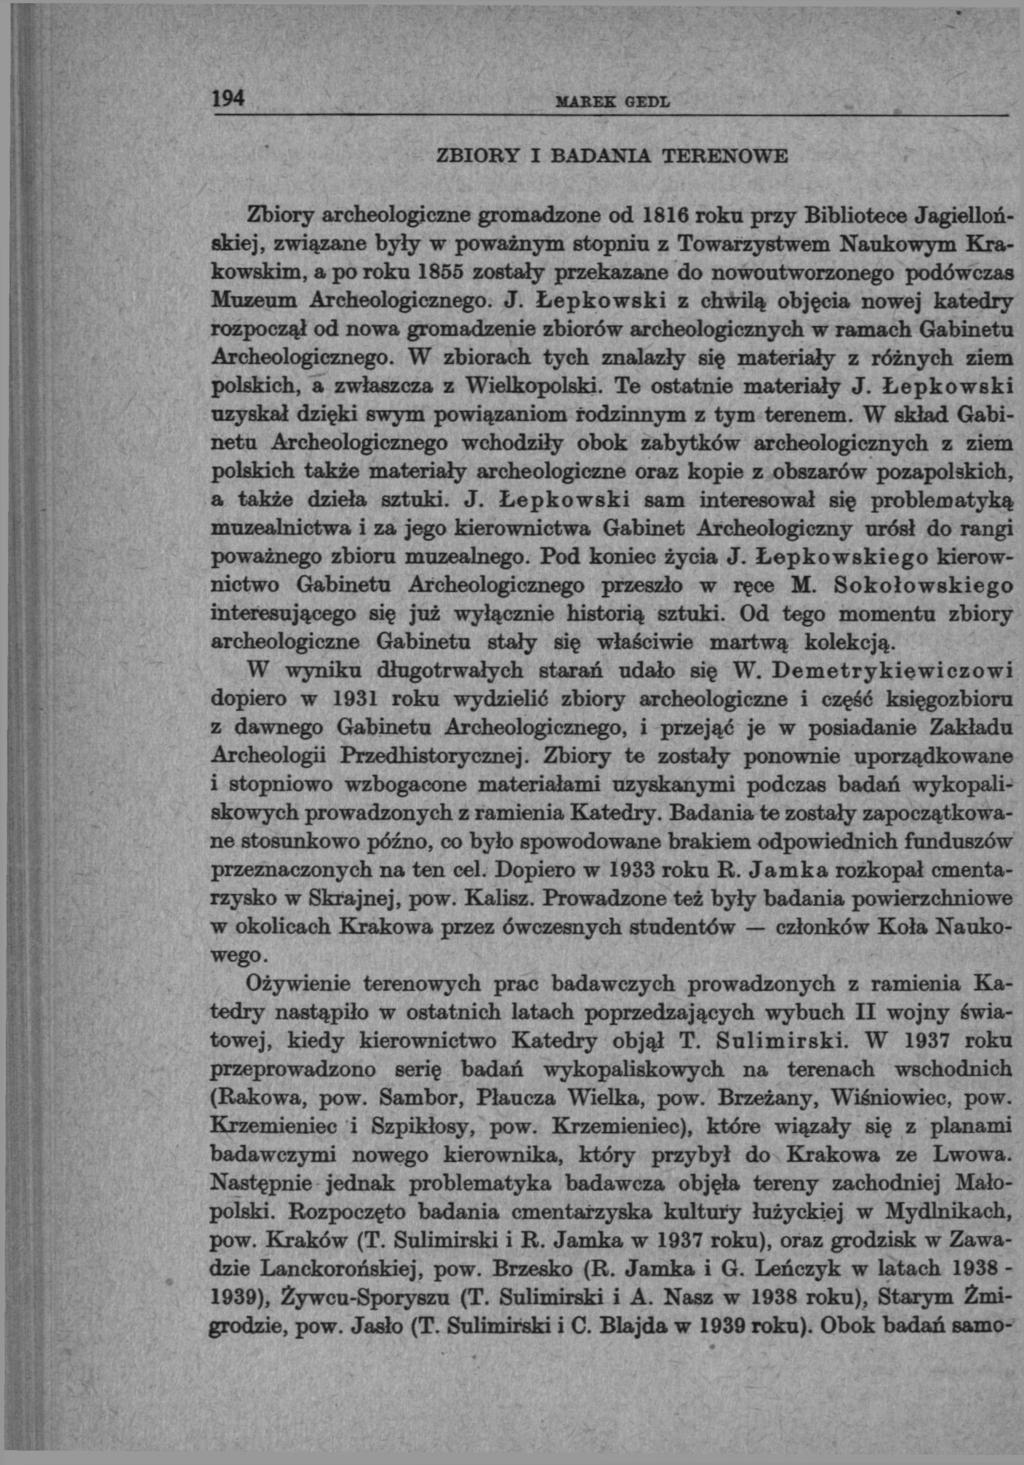 194 MAB EE GEDL ZBIORY I BADANIA TERENOWE Zbiory archeologiczne gromadzone od 1816 roku przy Bibliotece Jagiellońskiej, związane były w poważnym stopnia z Towarzystwem Naukowym Krakowskim, a po roku